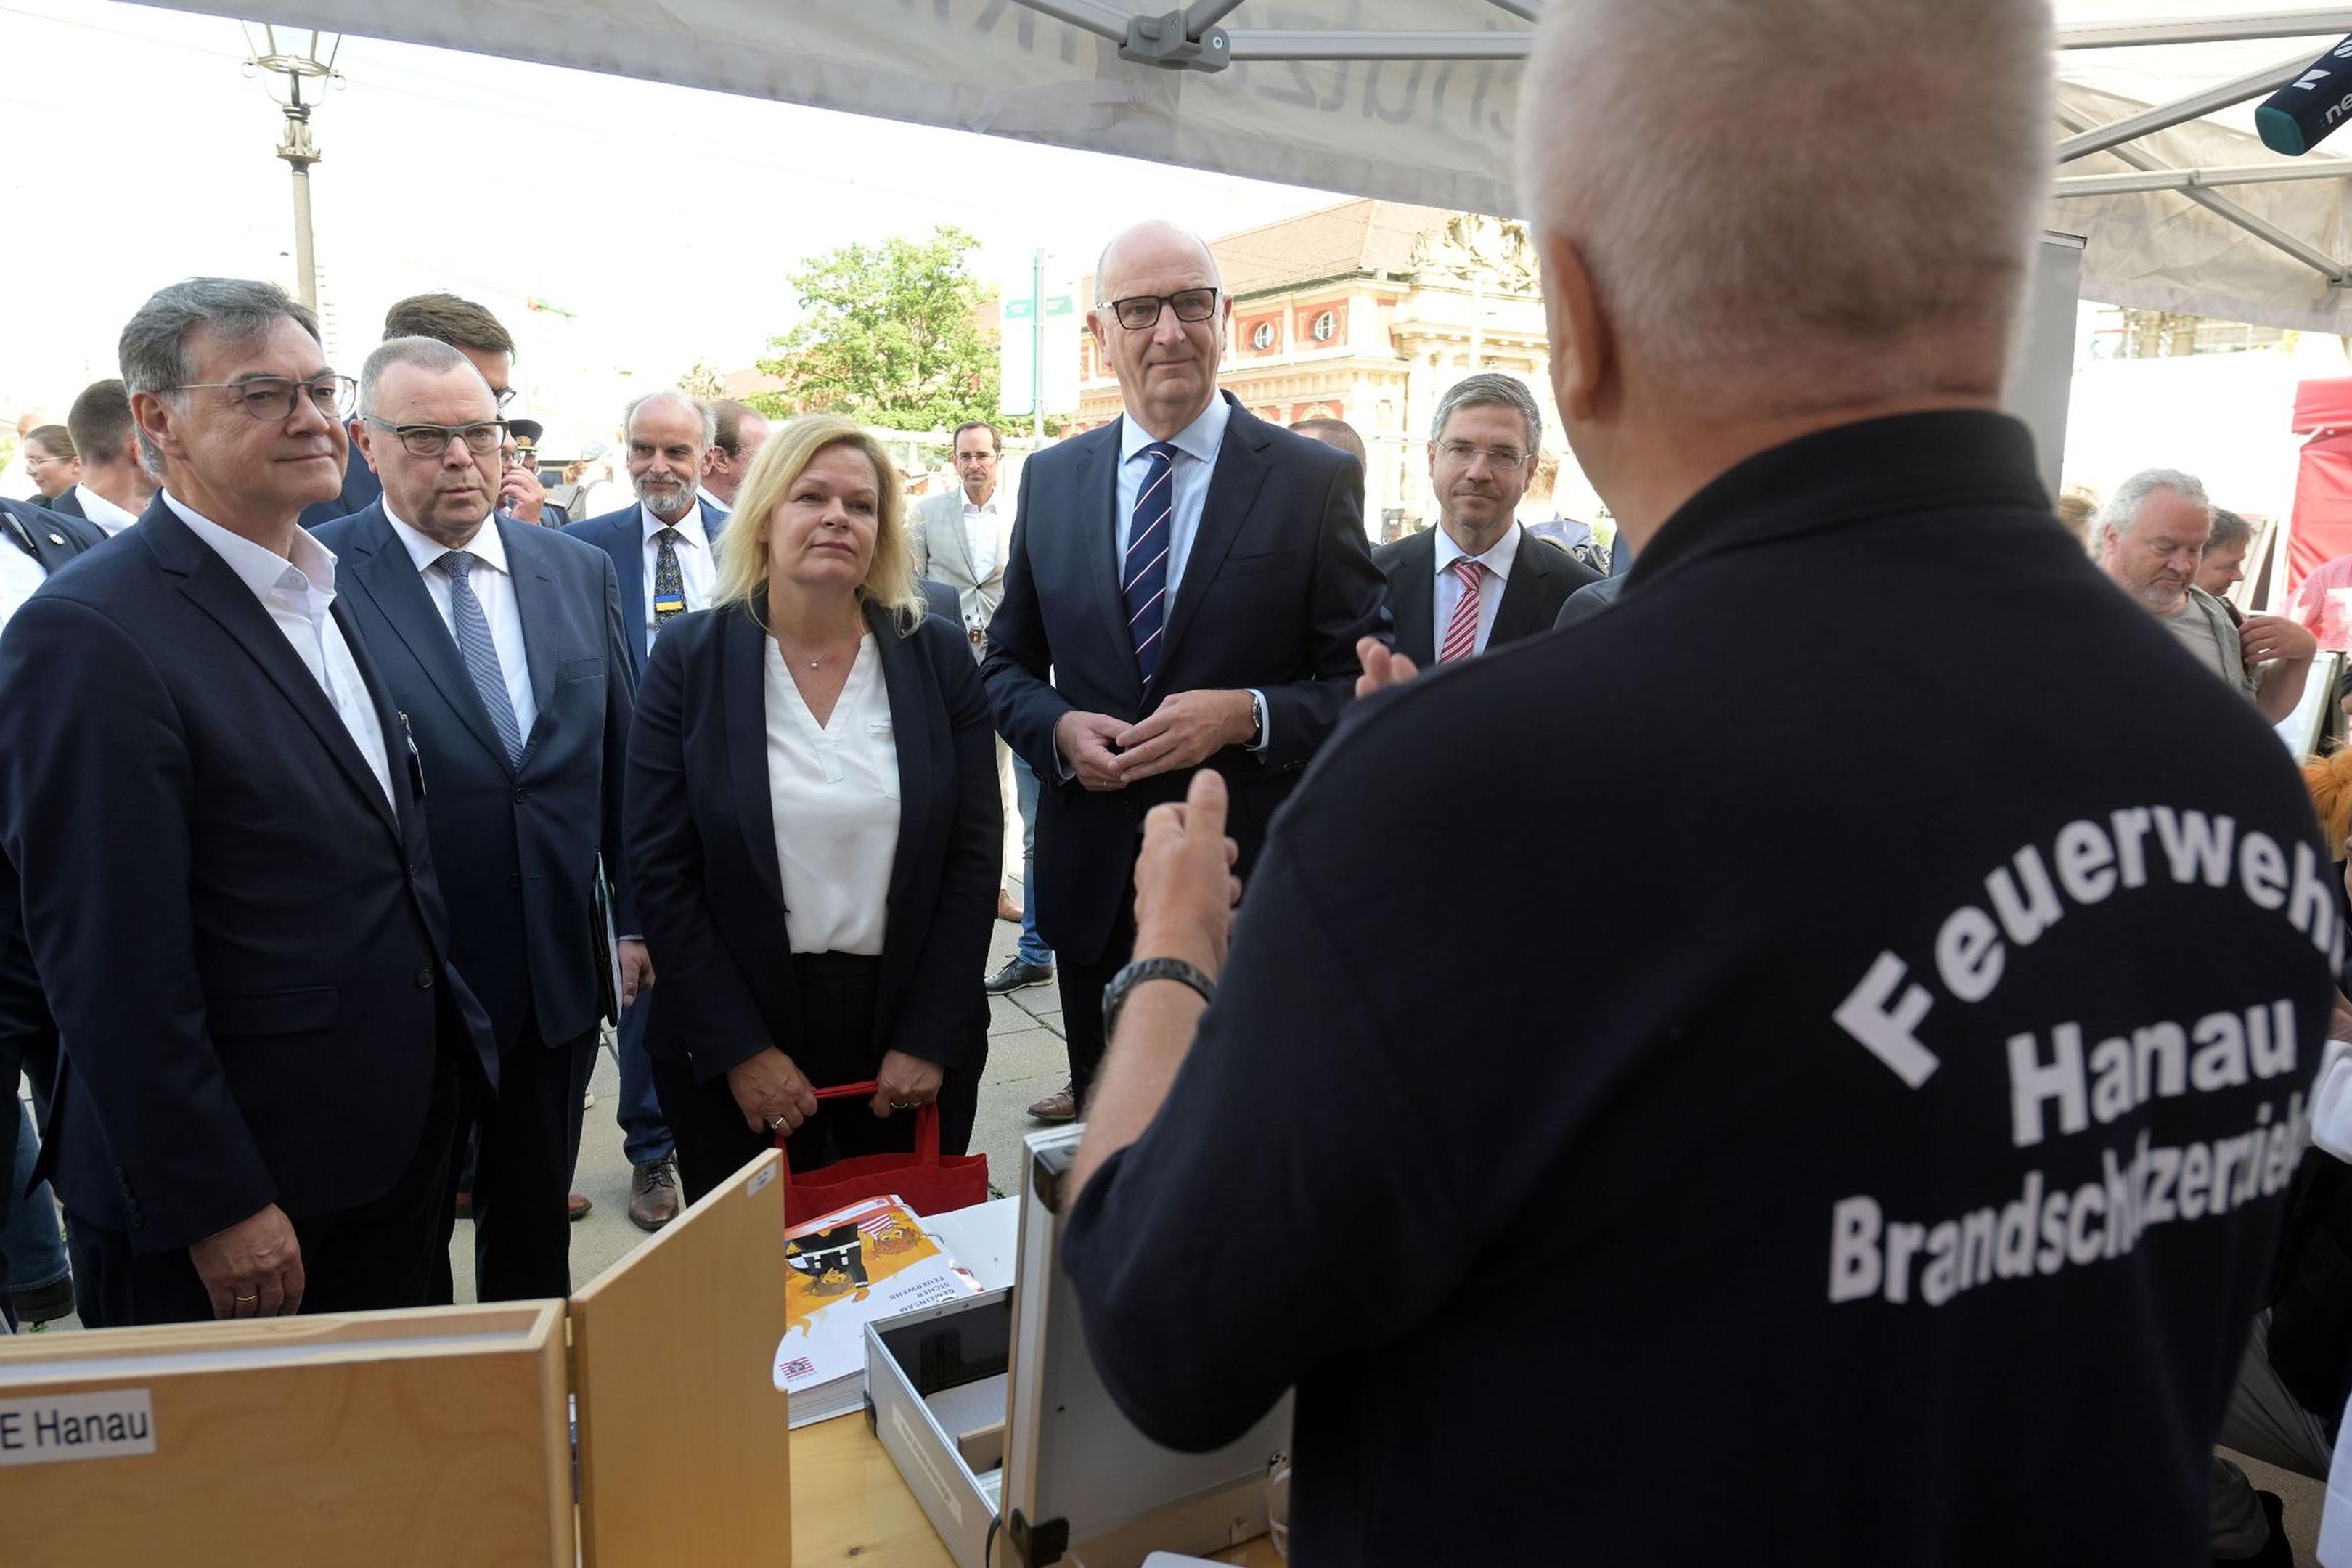 Bundesinnenministerin Nancy Faeser (l.) informiert sich am Stand der Feuerwehr Hanau während ihres Besuchs beim „Tag des Bevölkerungsschutzes“ in Potsdam.